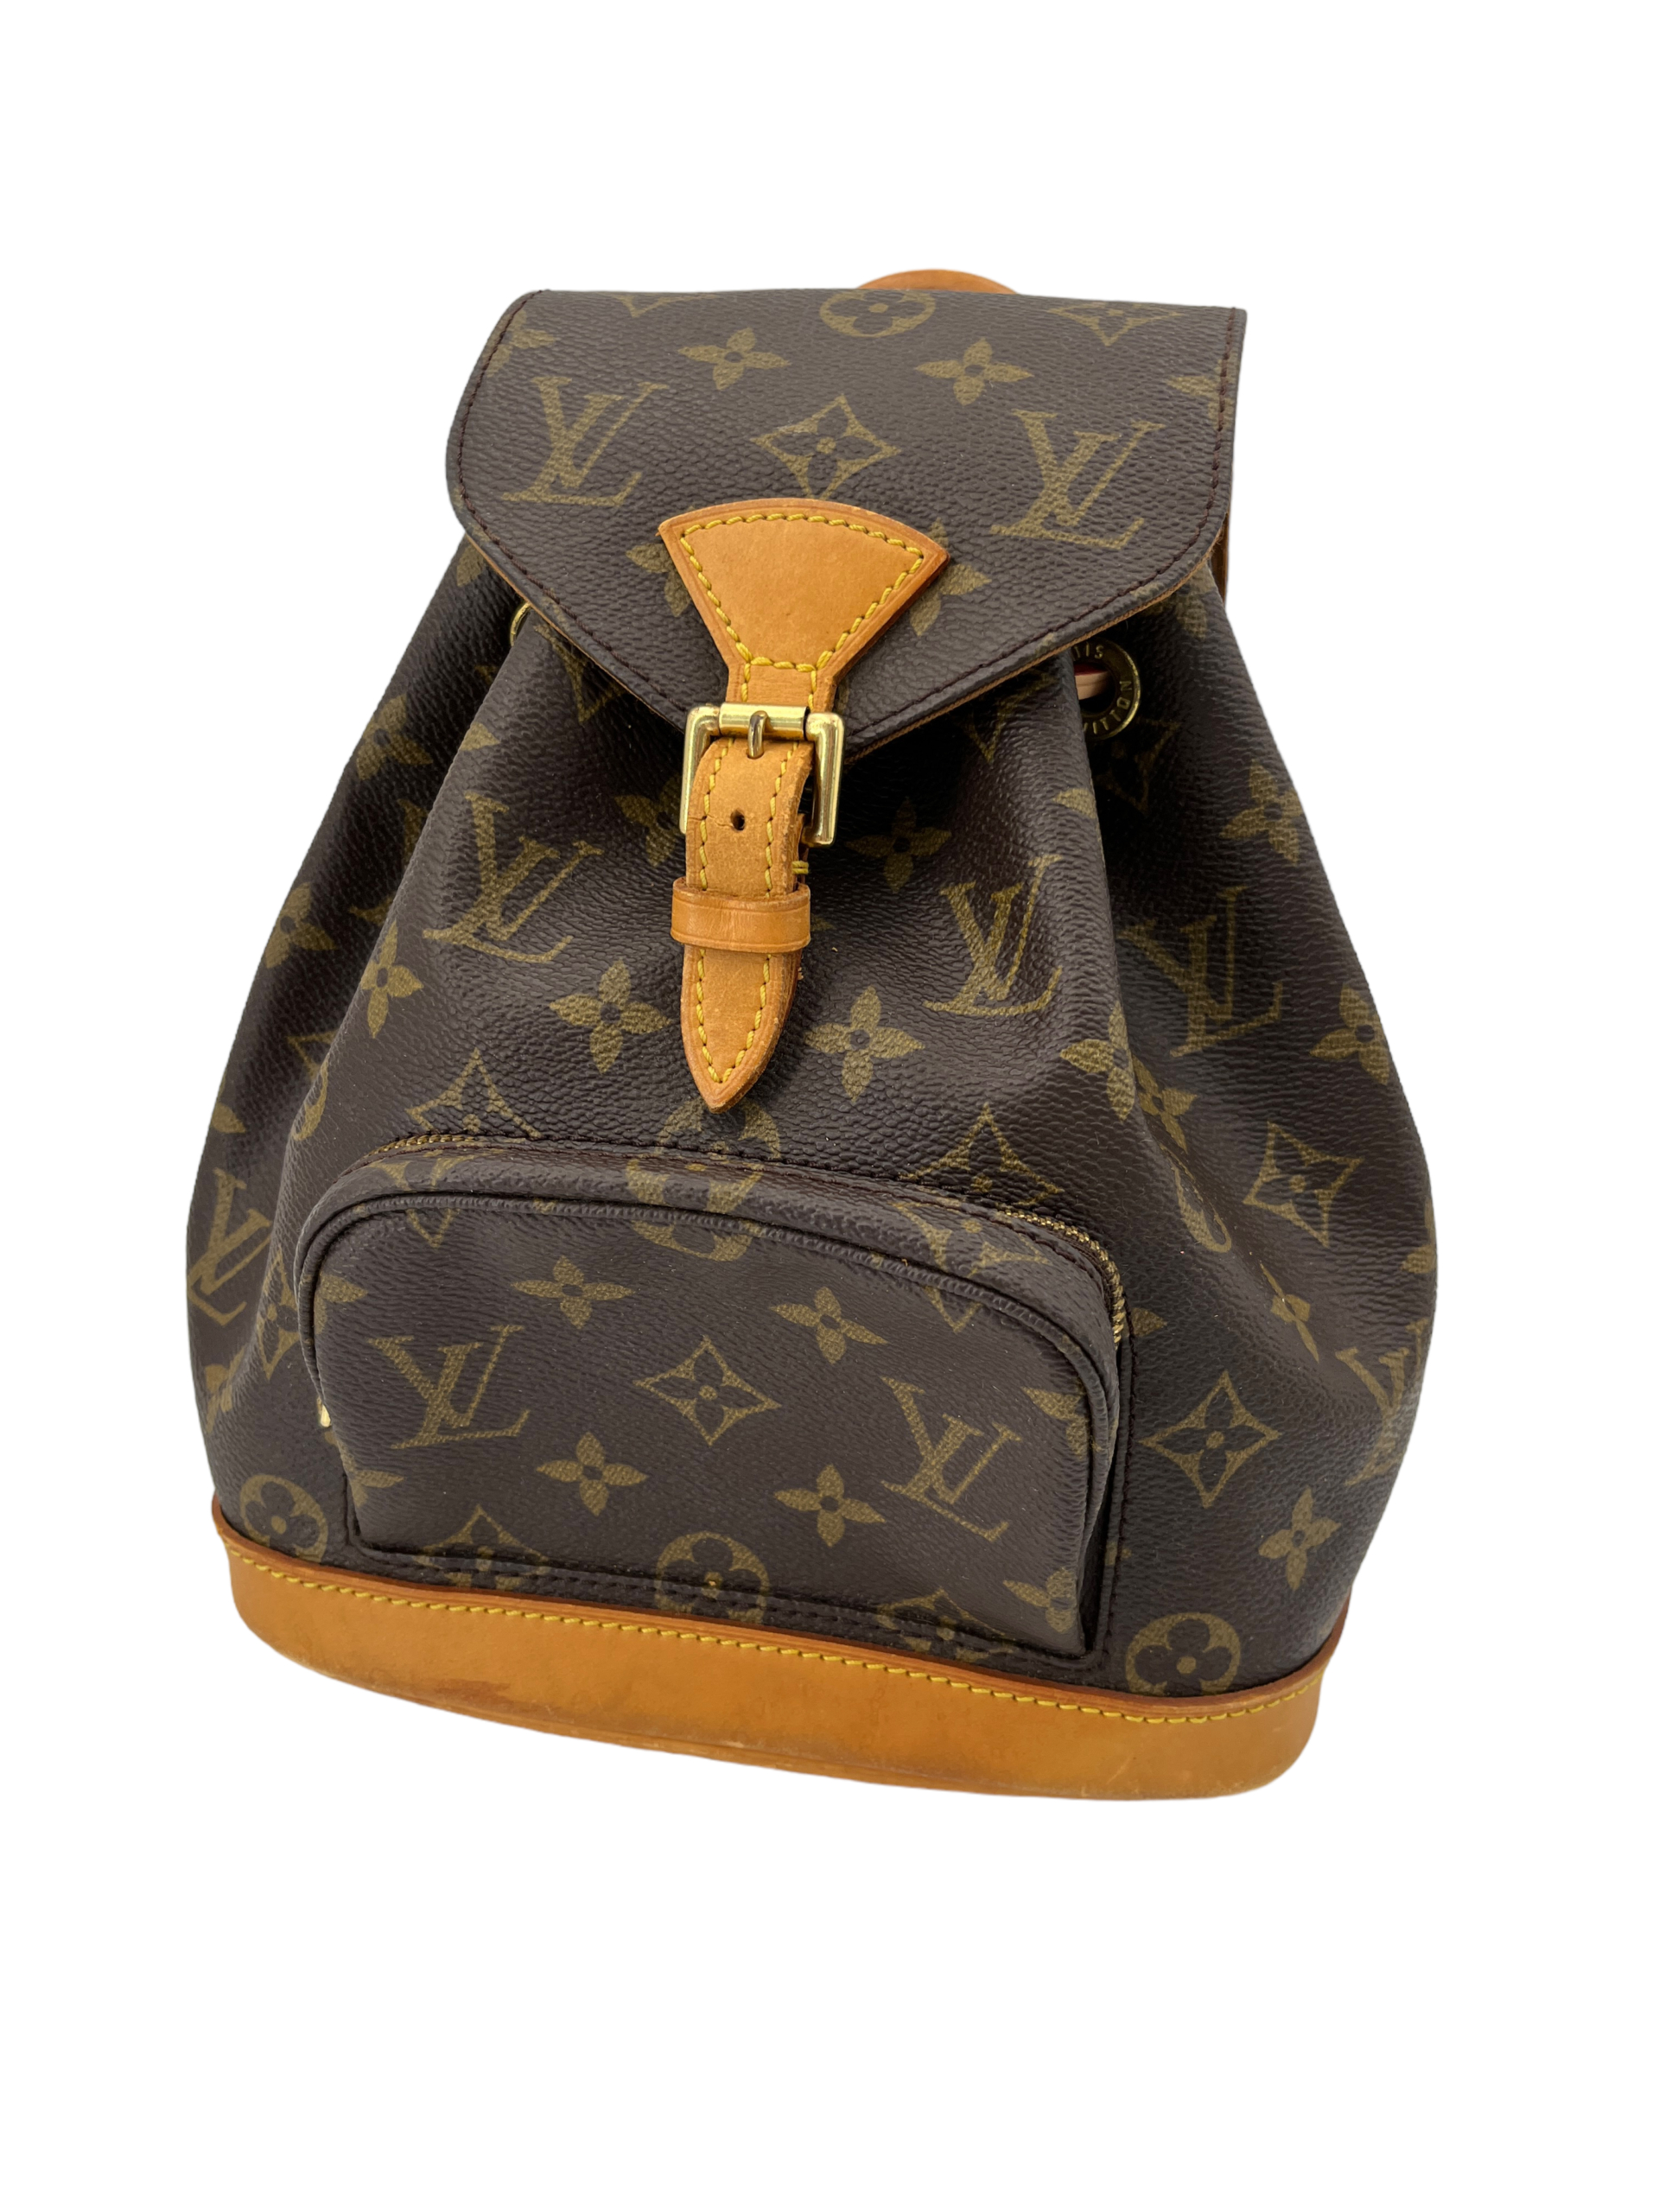 Louis Vuitton, Bags, A Louis Vuitton Monogram Montsouris Pm